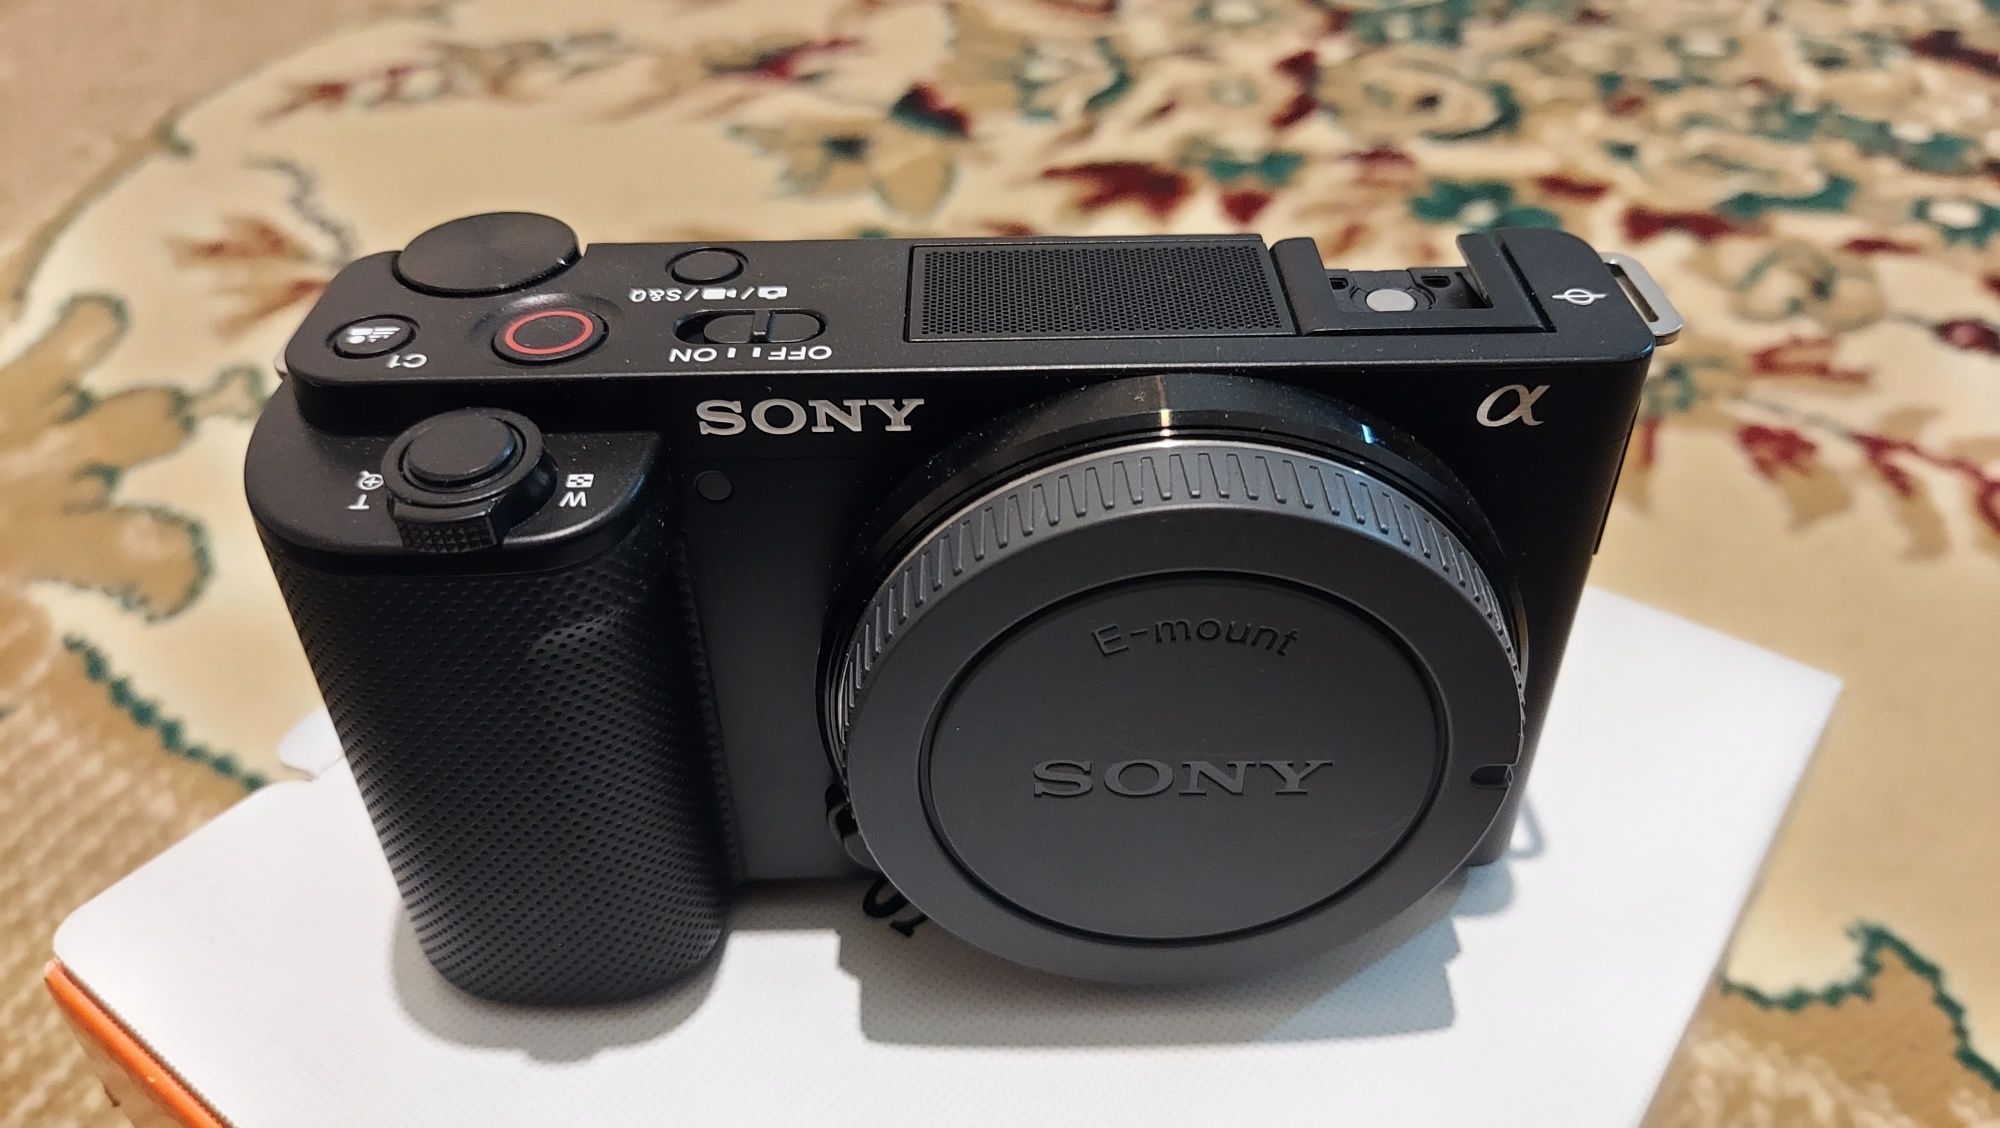 Фотоаппарат Sony zv-e10